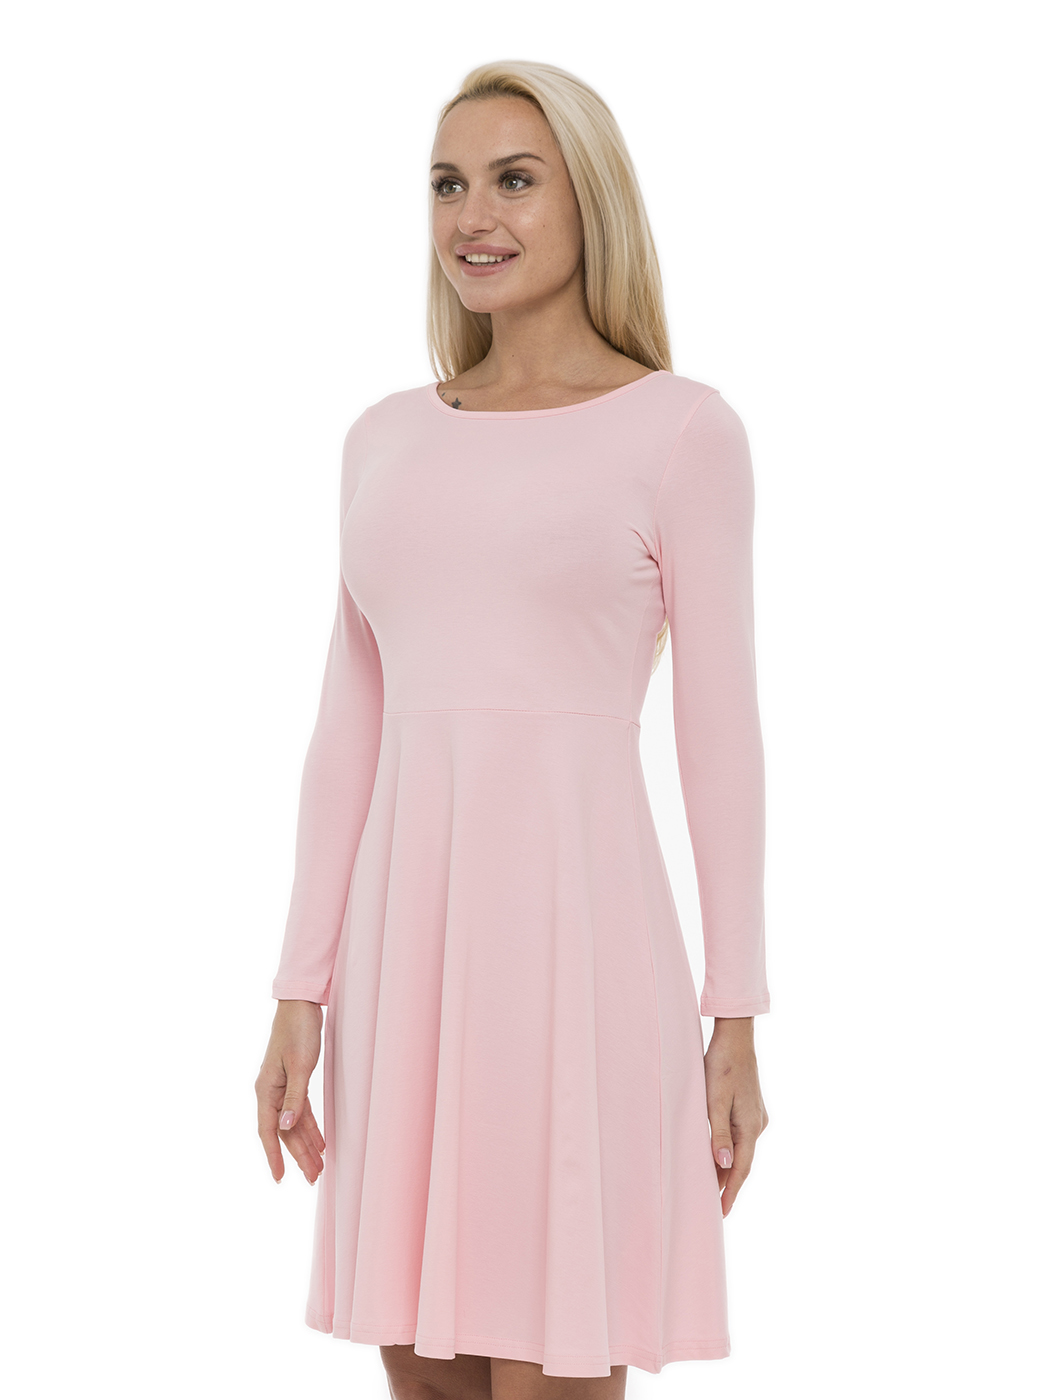 Платье женское Lunarable kelb003_ розовое XS